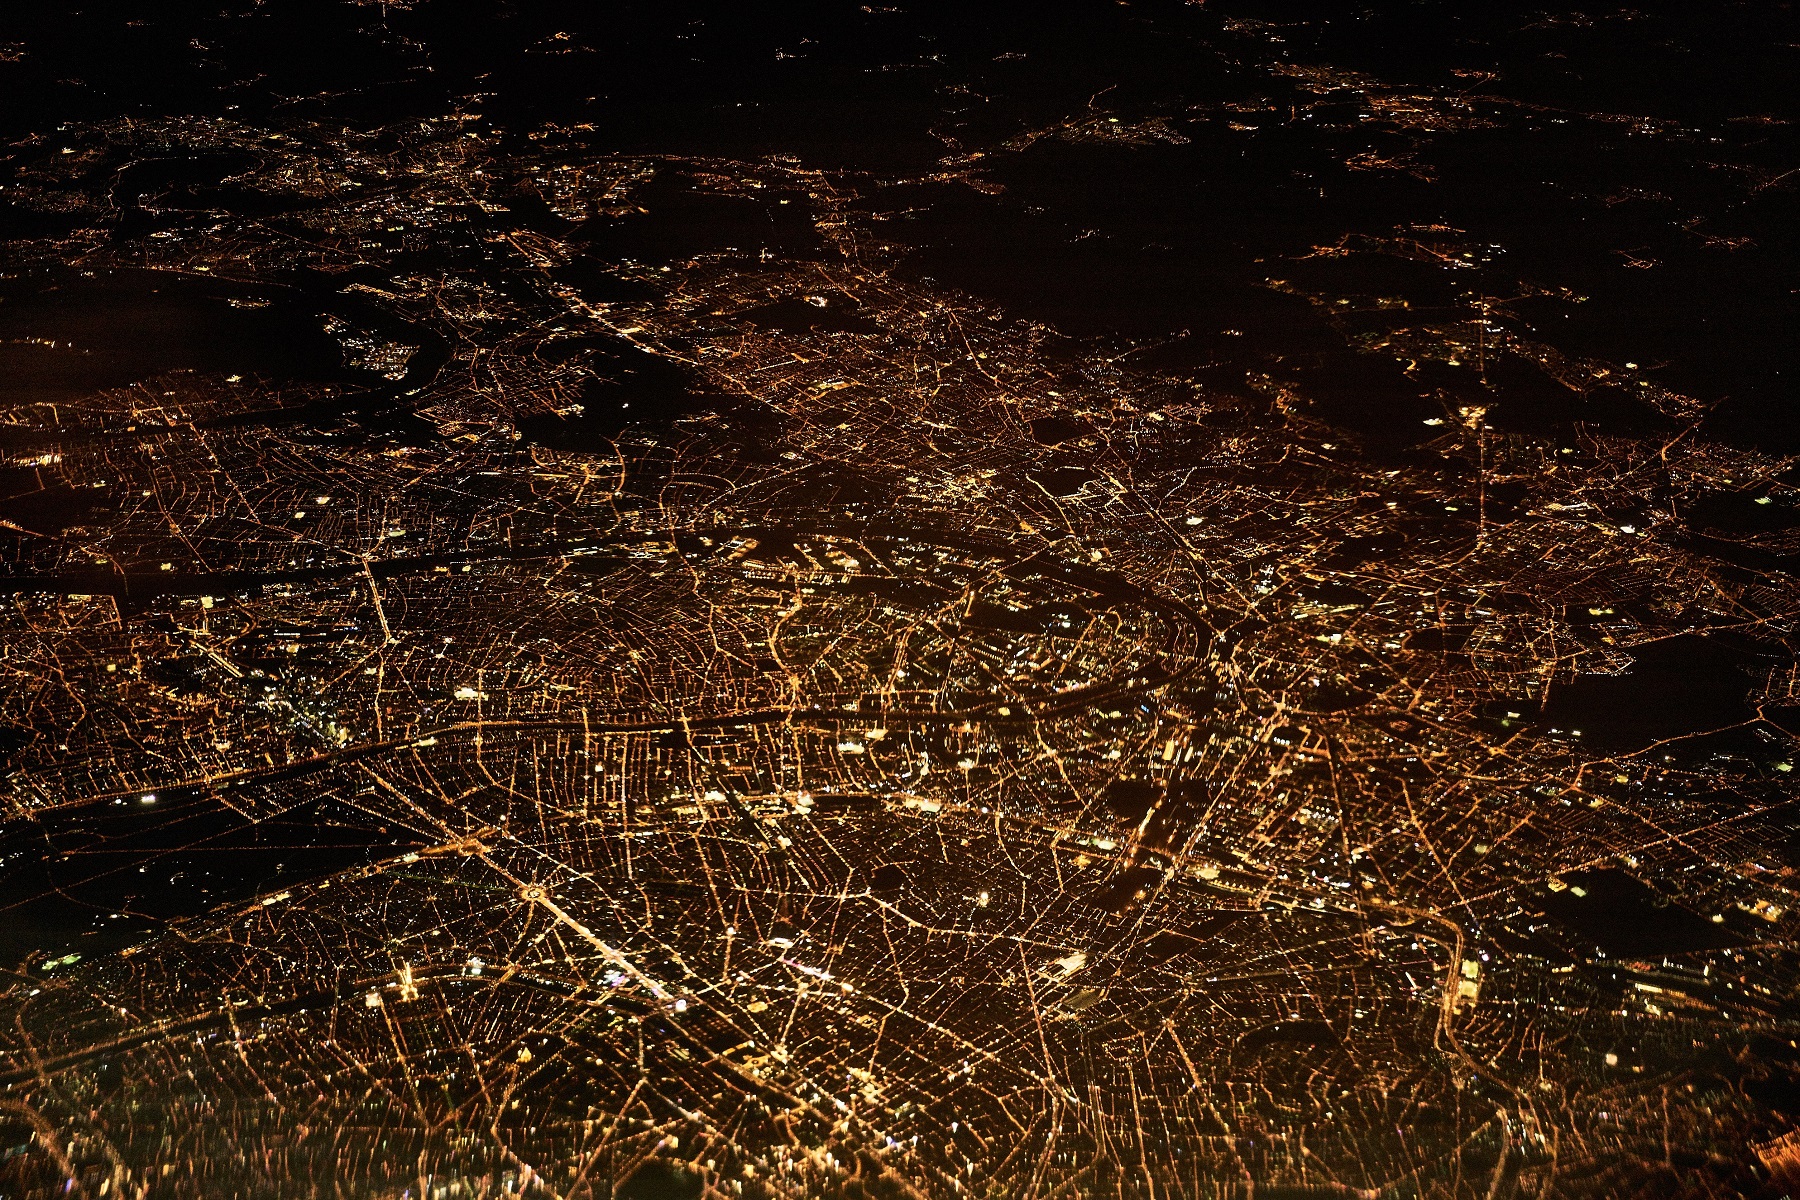 Paris bei Nacht: Die Lichter sind auch Datenquellen. Bild: [https://unsplash.com/photos/52gEprMkp7M Dennis Kummer]